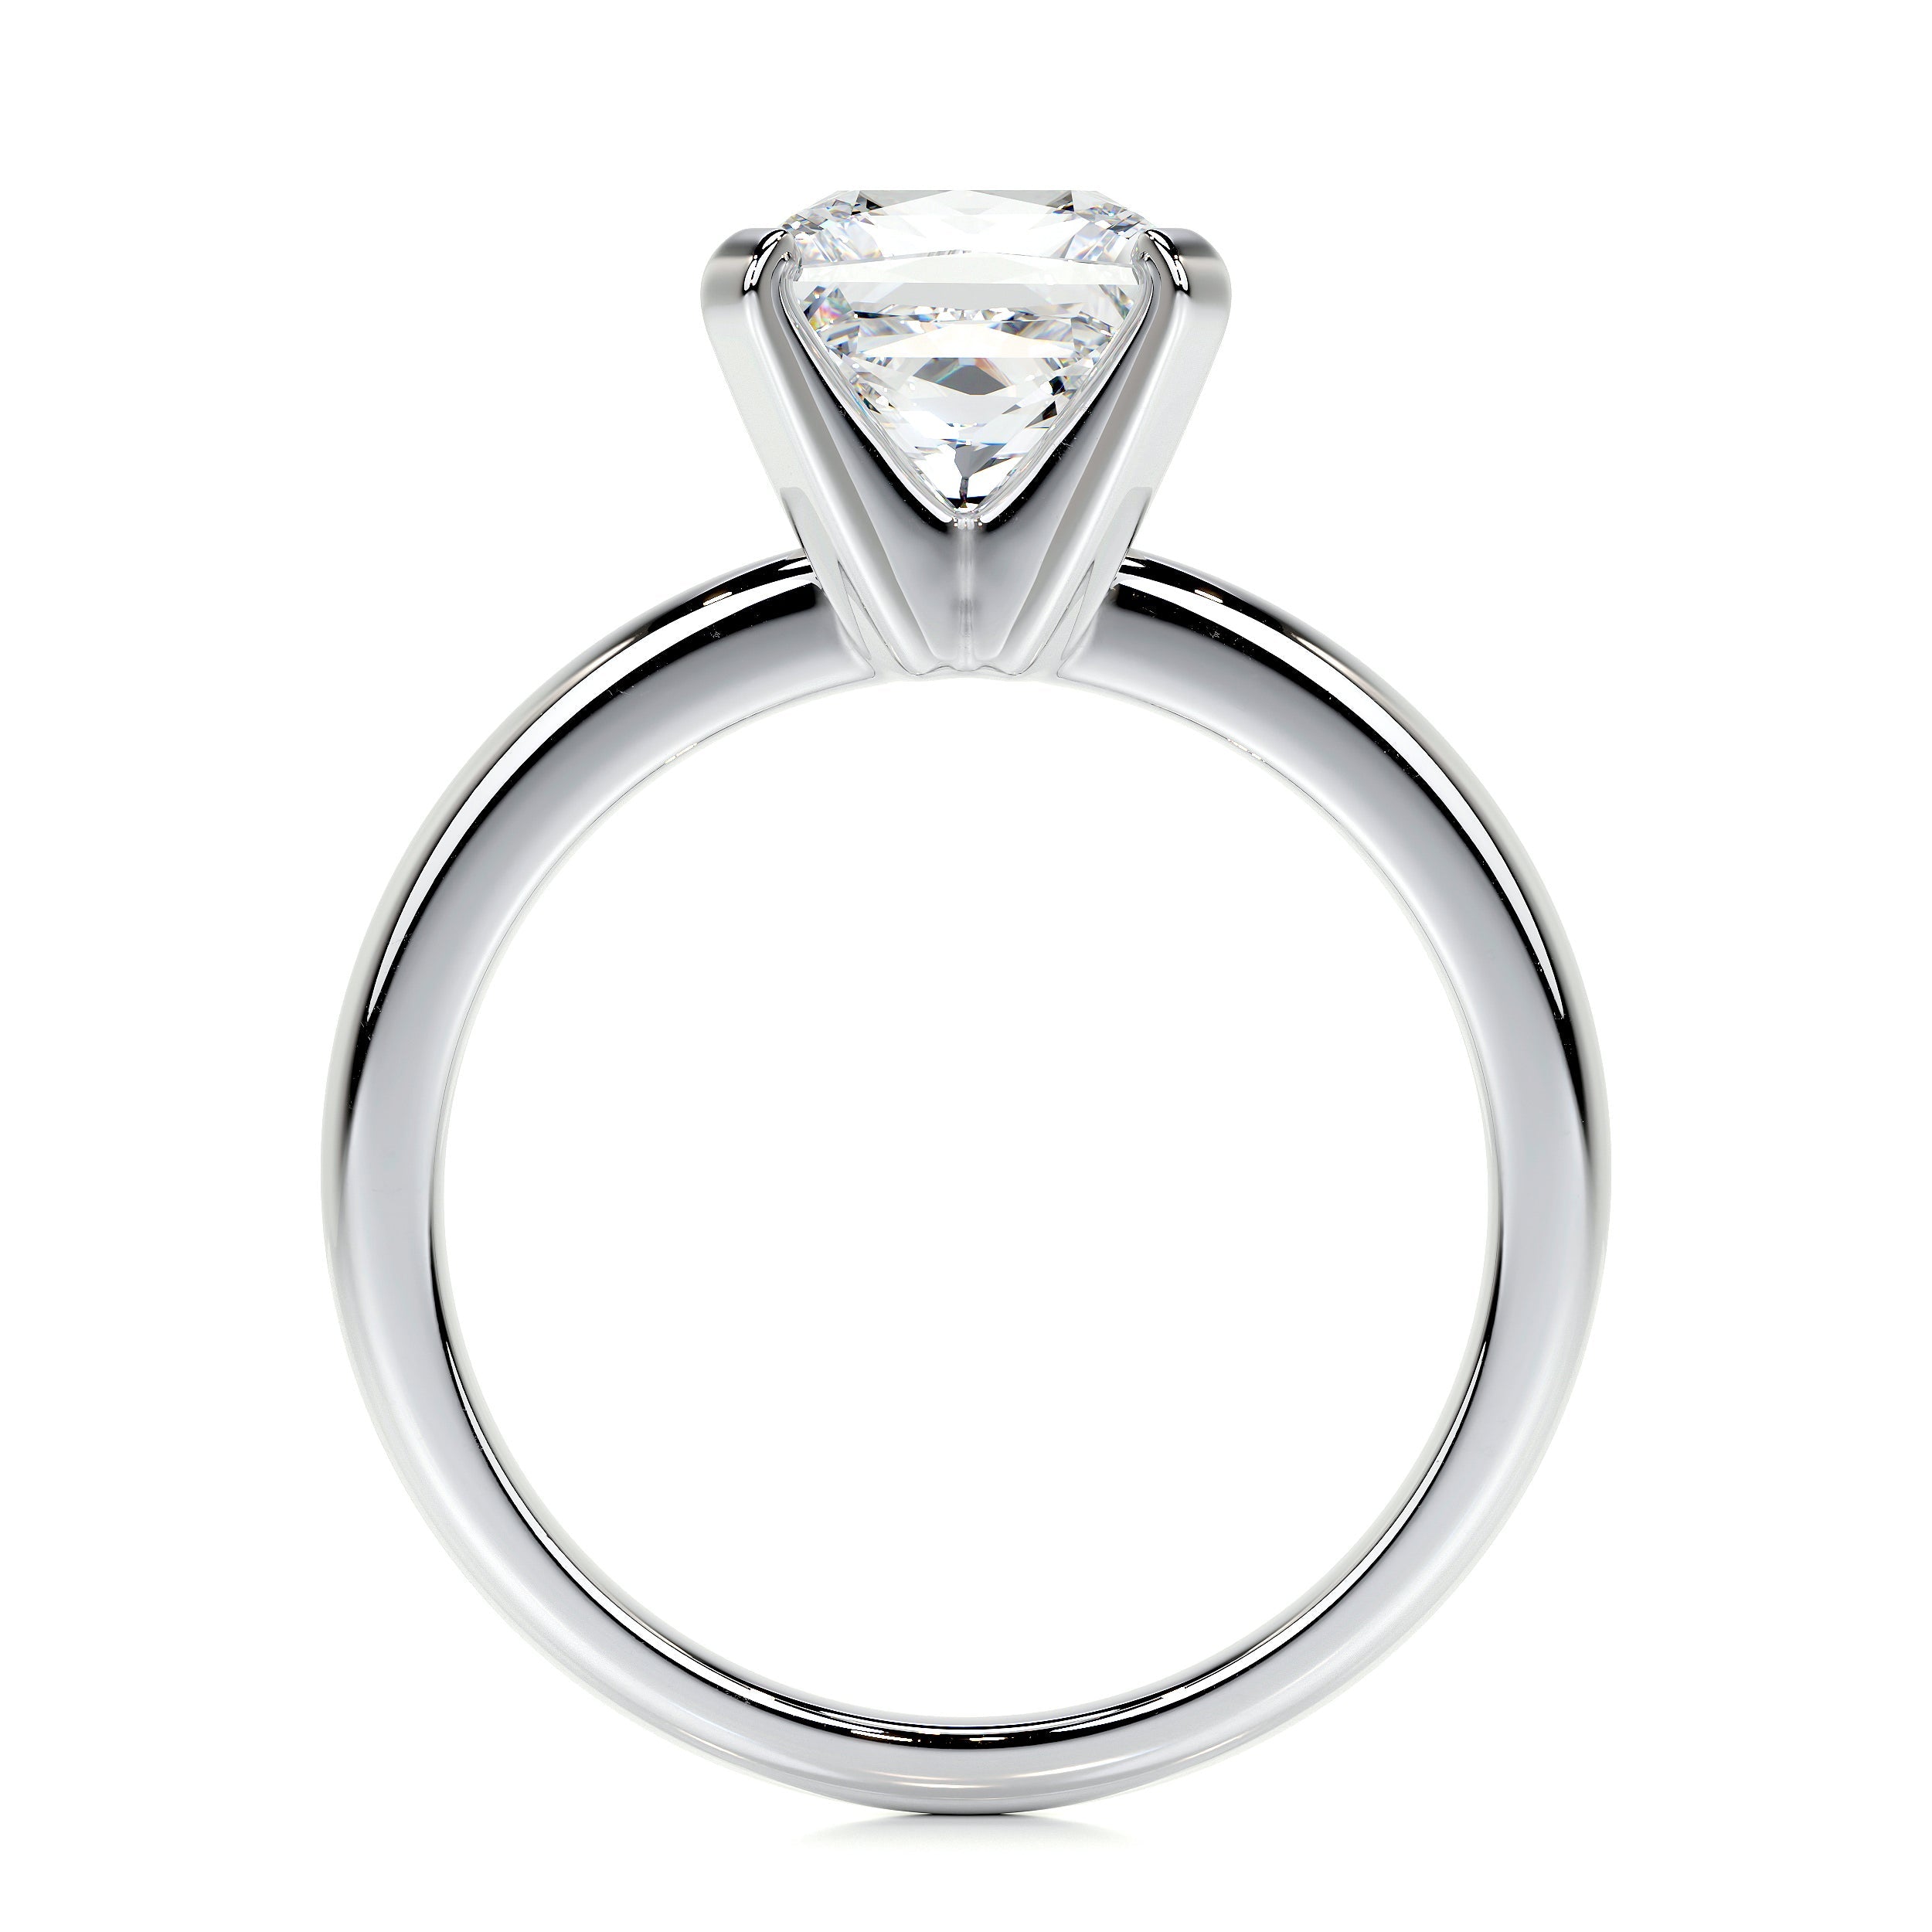 Isabelle Lab Grown Diamond Ring   (2 Carat) -Platinum